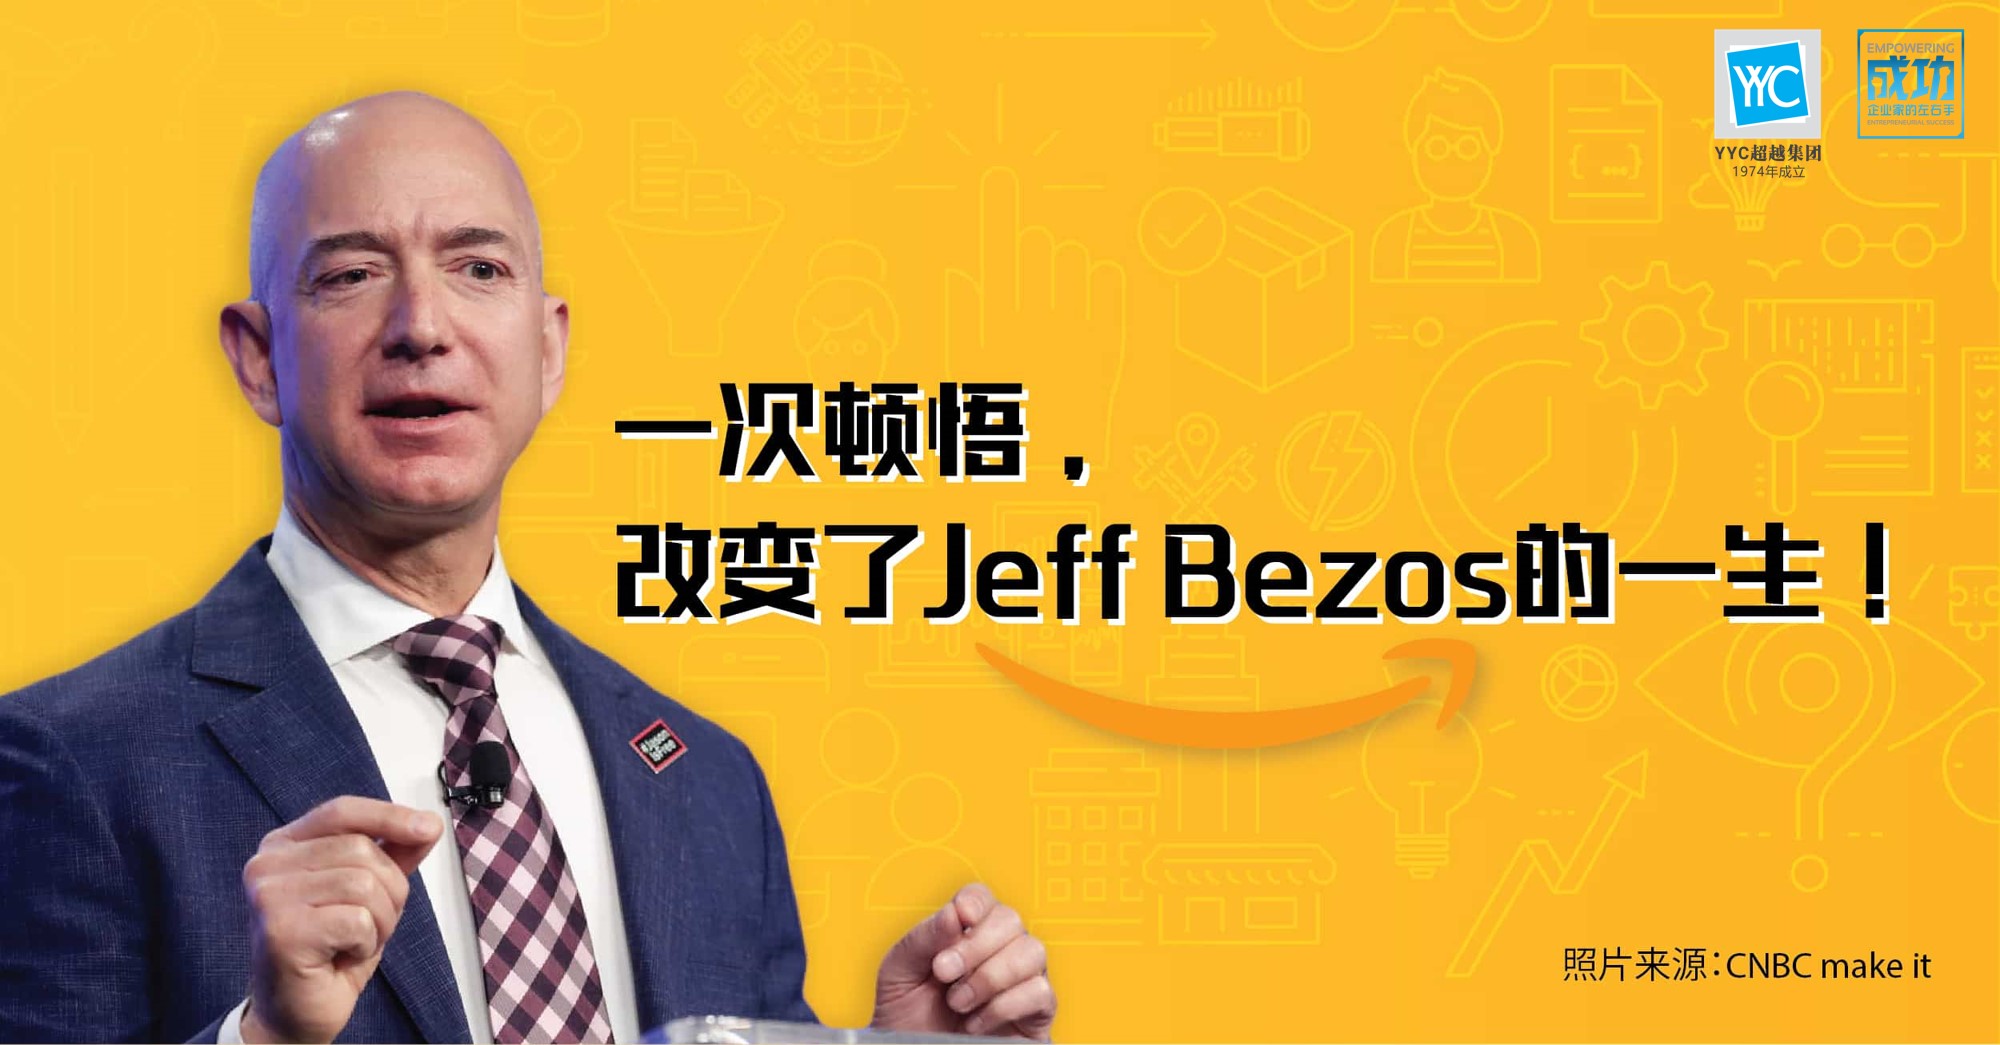 亚马逊CEO杰夫-贝佐斯（Jeff Bezos）拥有1260亿美元的财富，是世界上最富有的人，但他可能不是最聪明的人，他在大学生时期是这么认为的。  当Jeff在网上卖书之前，在上世纪80年代还是普林斯顿大学物理学专业的学生。尽管他是荣誉课程中前25名的学生，但他认为自己还不够聪明，无法与别的学生竞争。